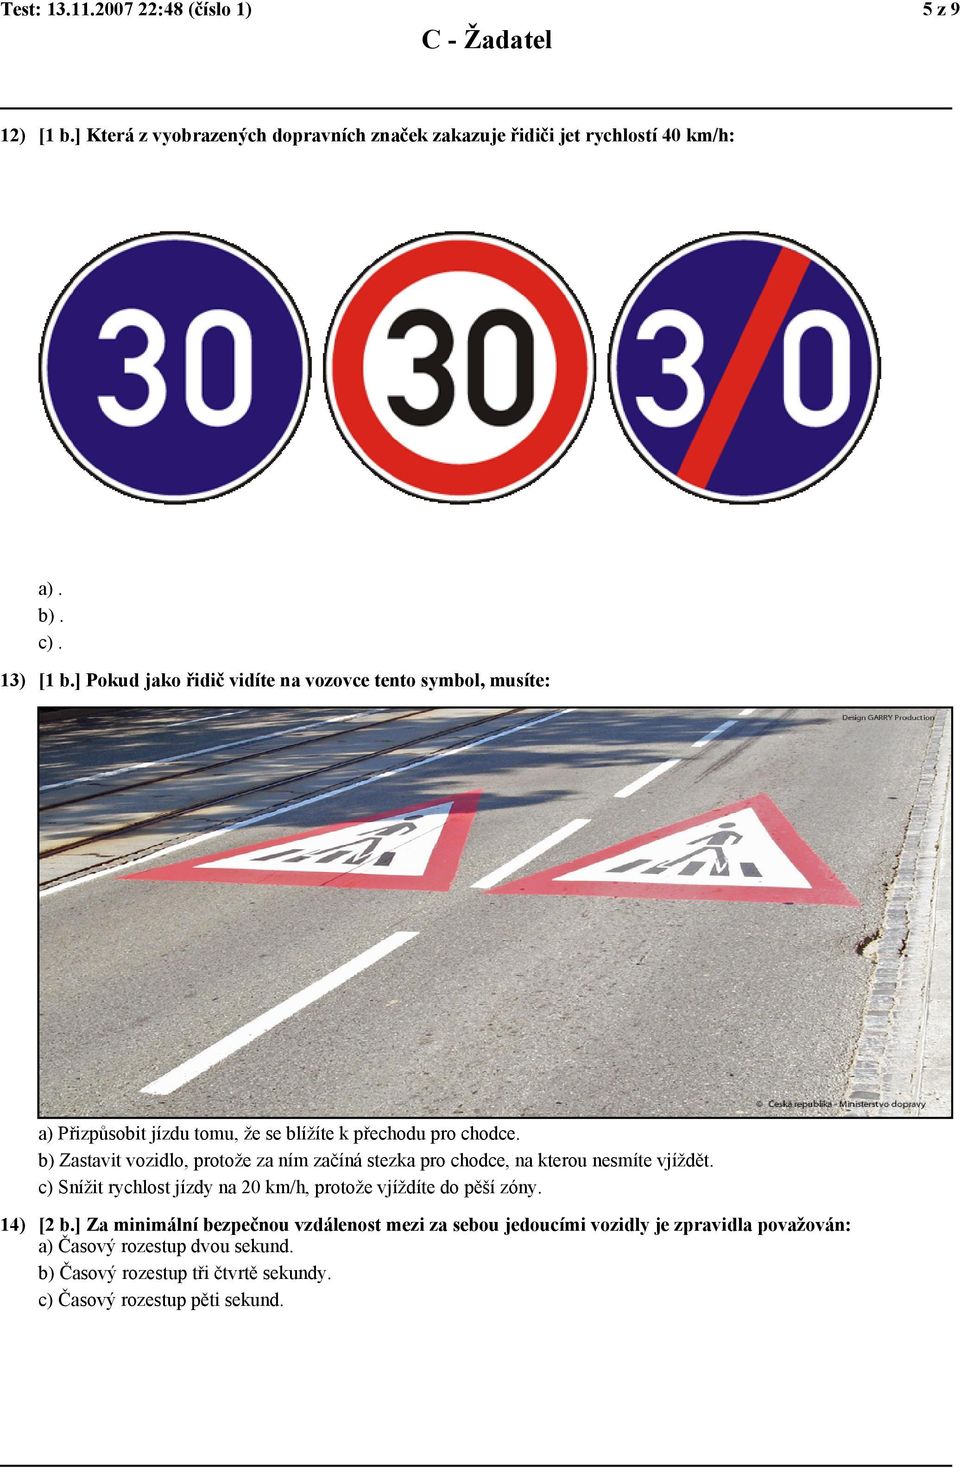 b) Zastavit vozidlo, protože za ním začíná stezka pro chodce, na kterou nesmíte vjíždět. c) Snížit rychlost jízdy na 20 km/h, protože vjíždíte do pěší zóny.